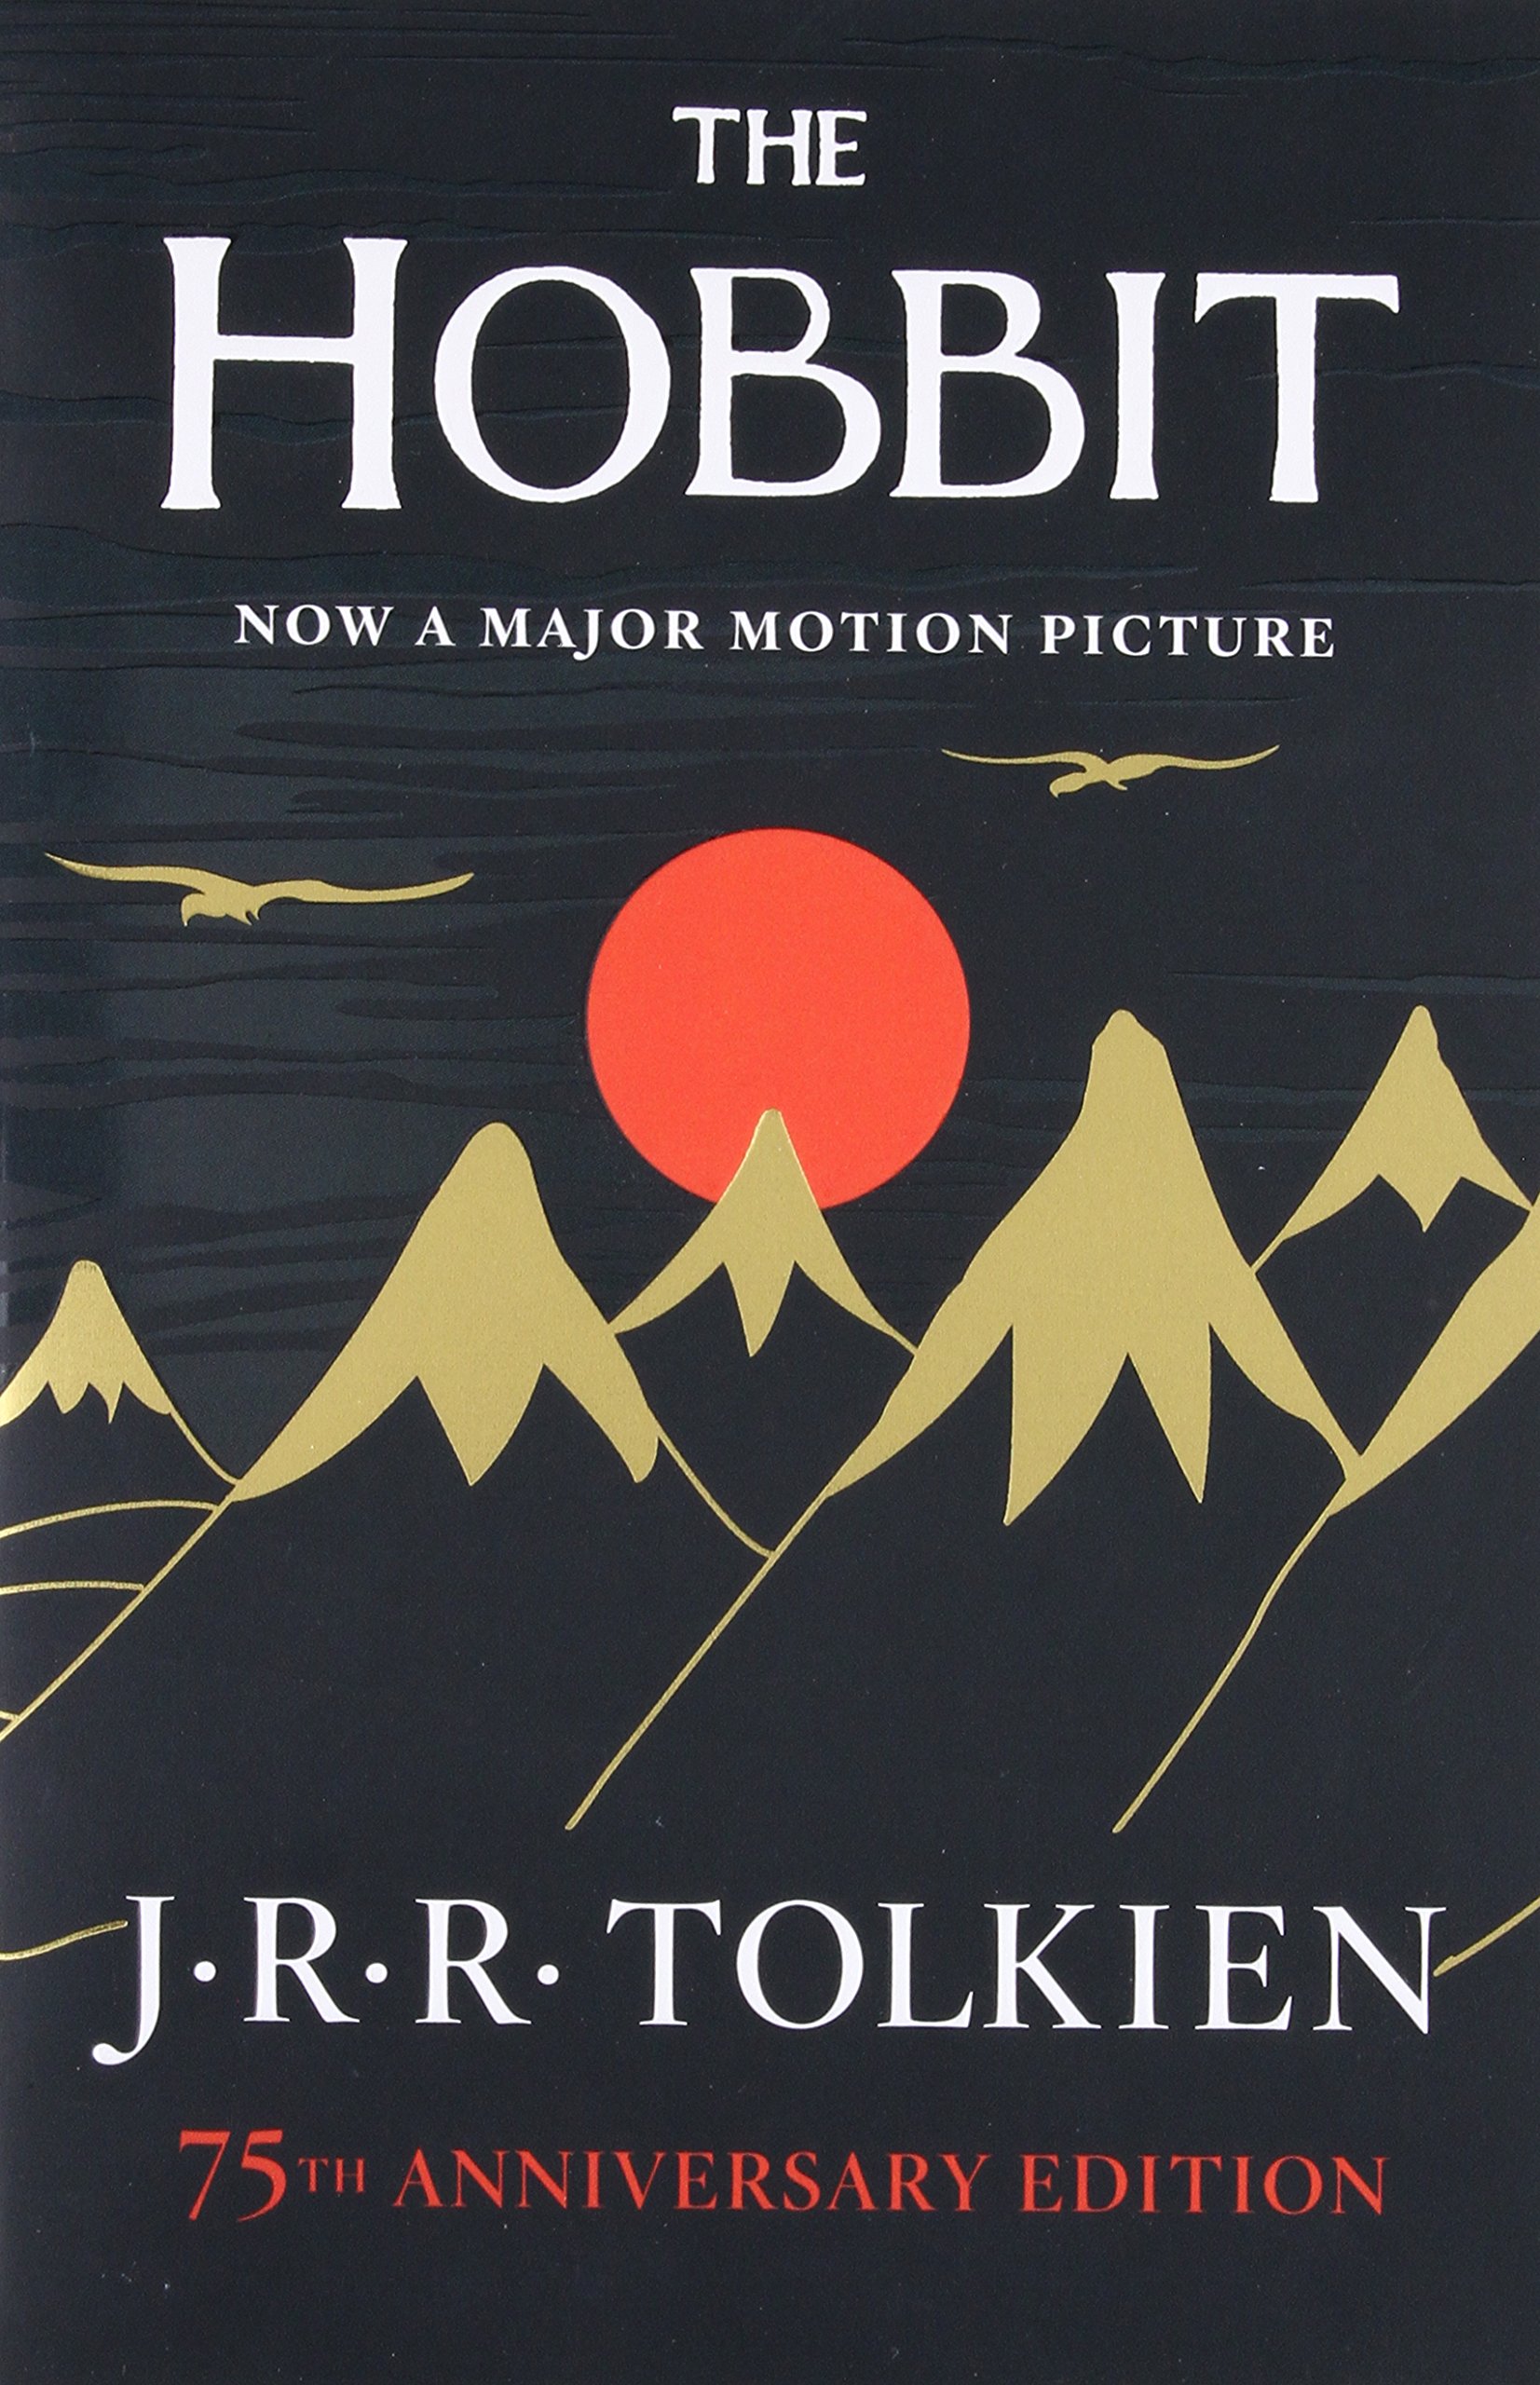 the hobbit by jrr tolkein